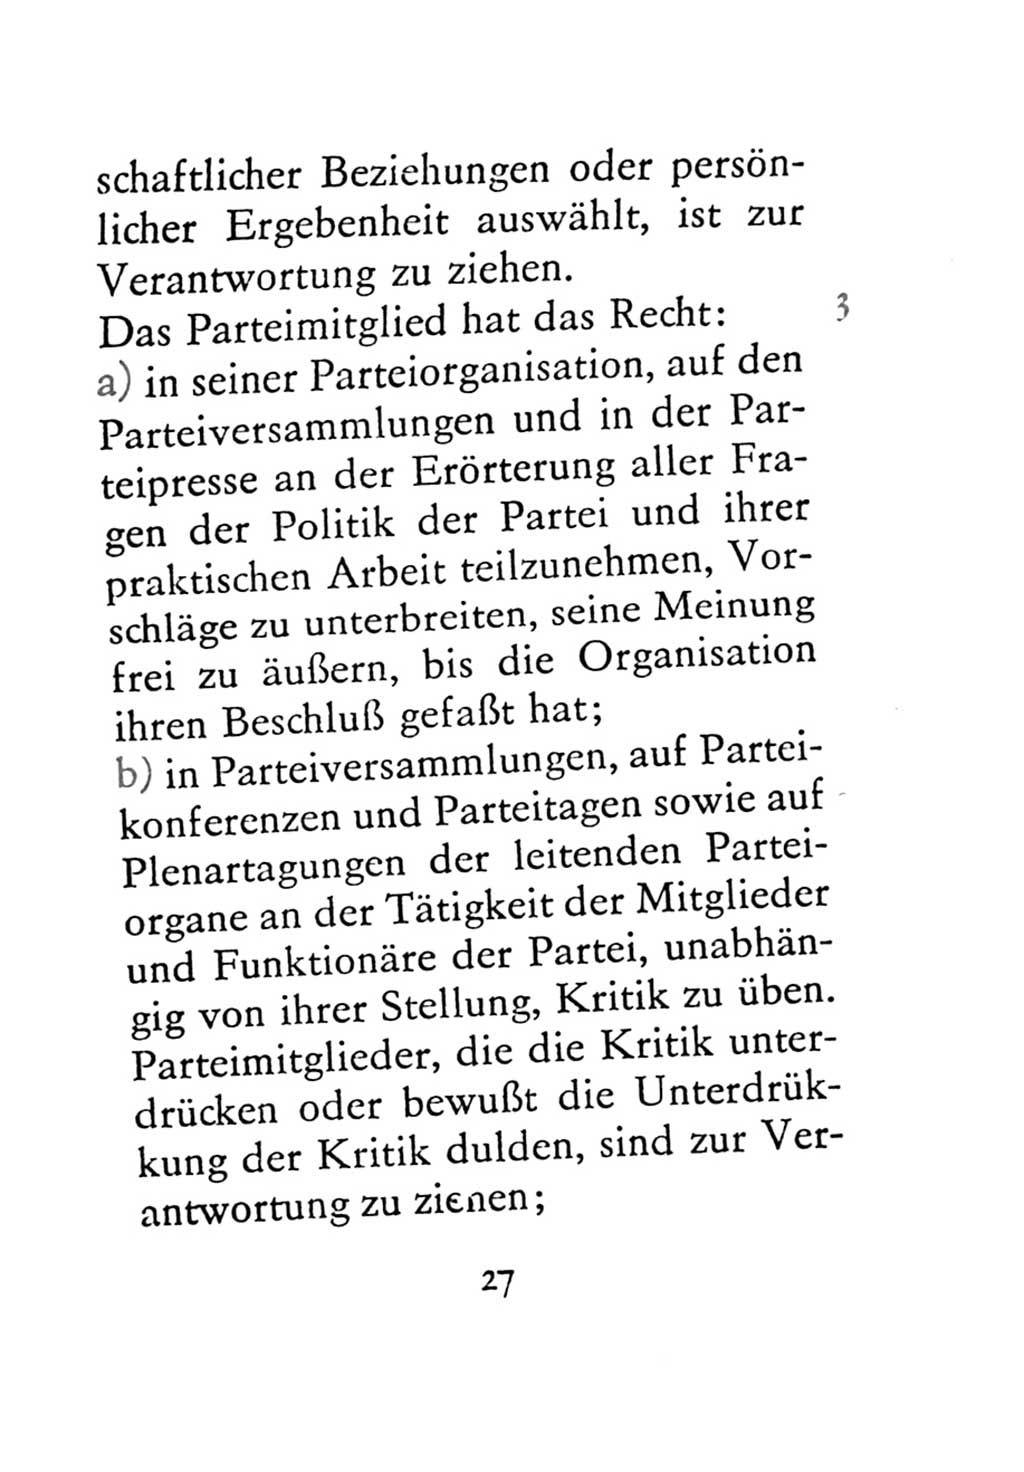 Statut der Sozialistischen Einheitspartei Deutschlands (SED) 1971, Seite 27 (St. SED DDR 1971, S. 27)